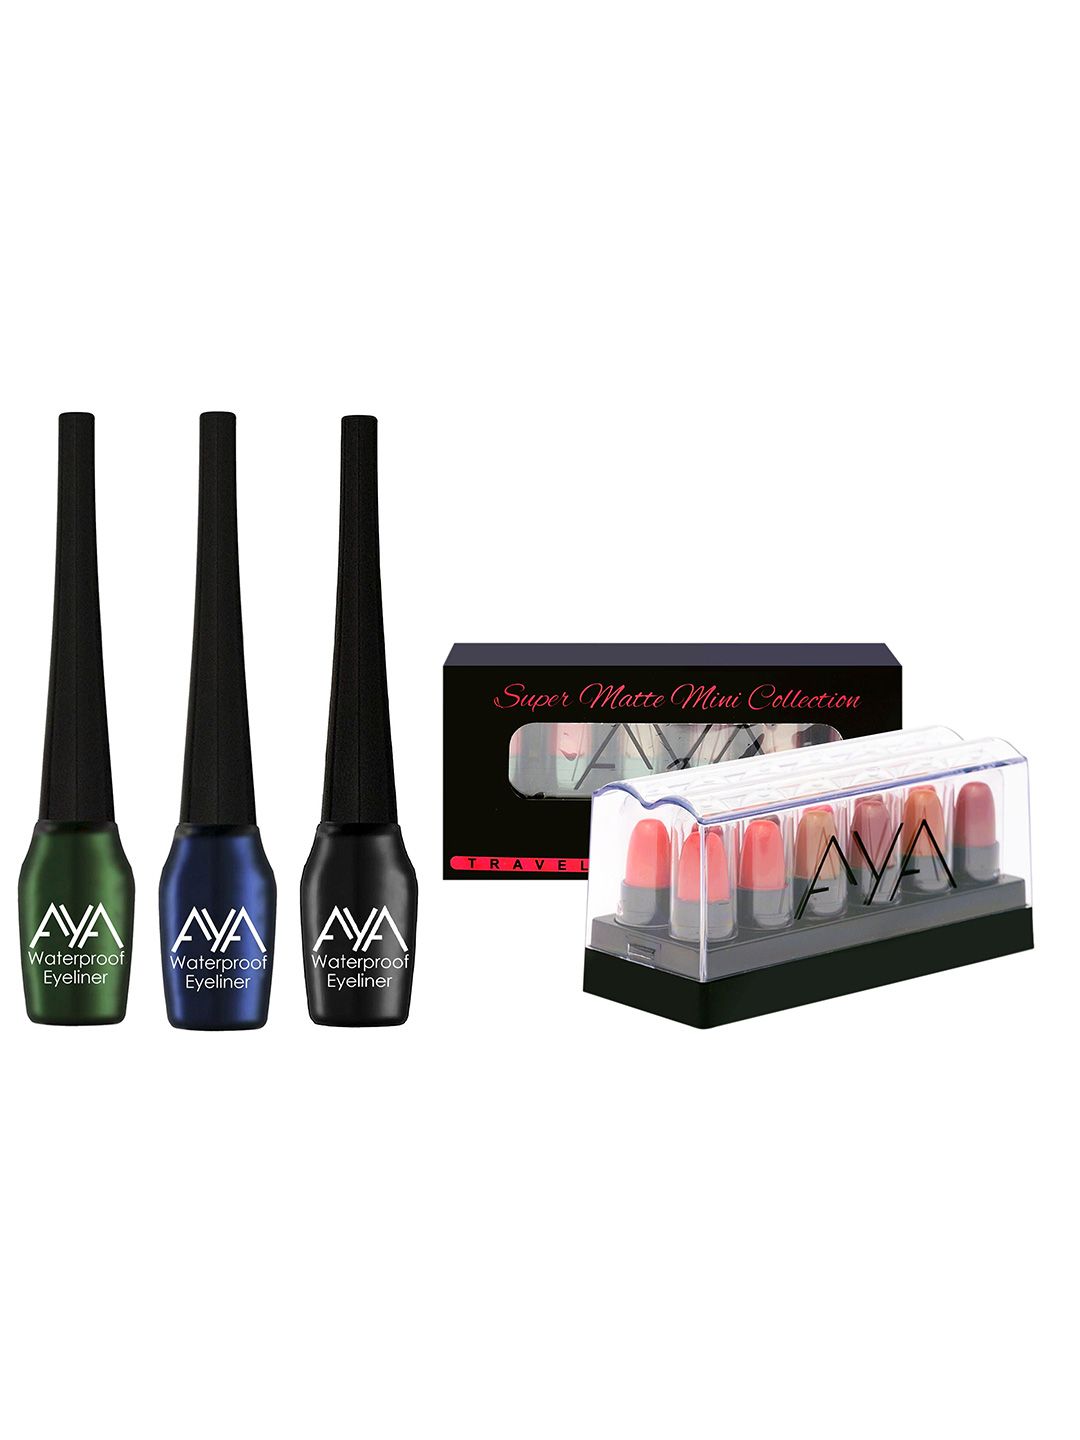 AYA Set of 3 Waterproof Liquid Eyeliner & Set of 12 Super Matte Mini Lipstick Combo Price in India